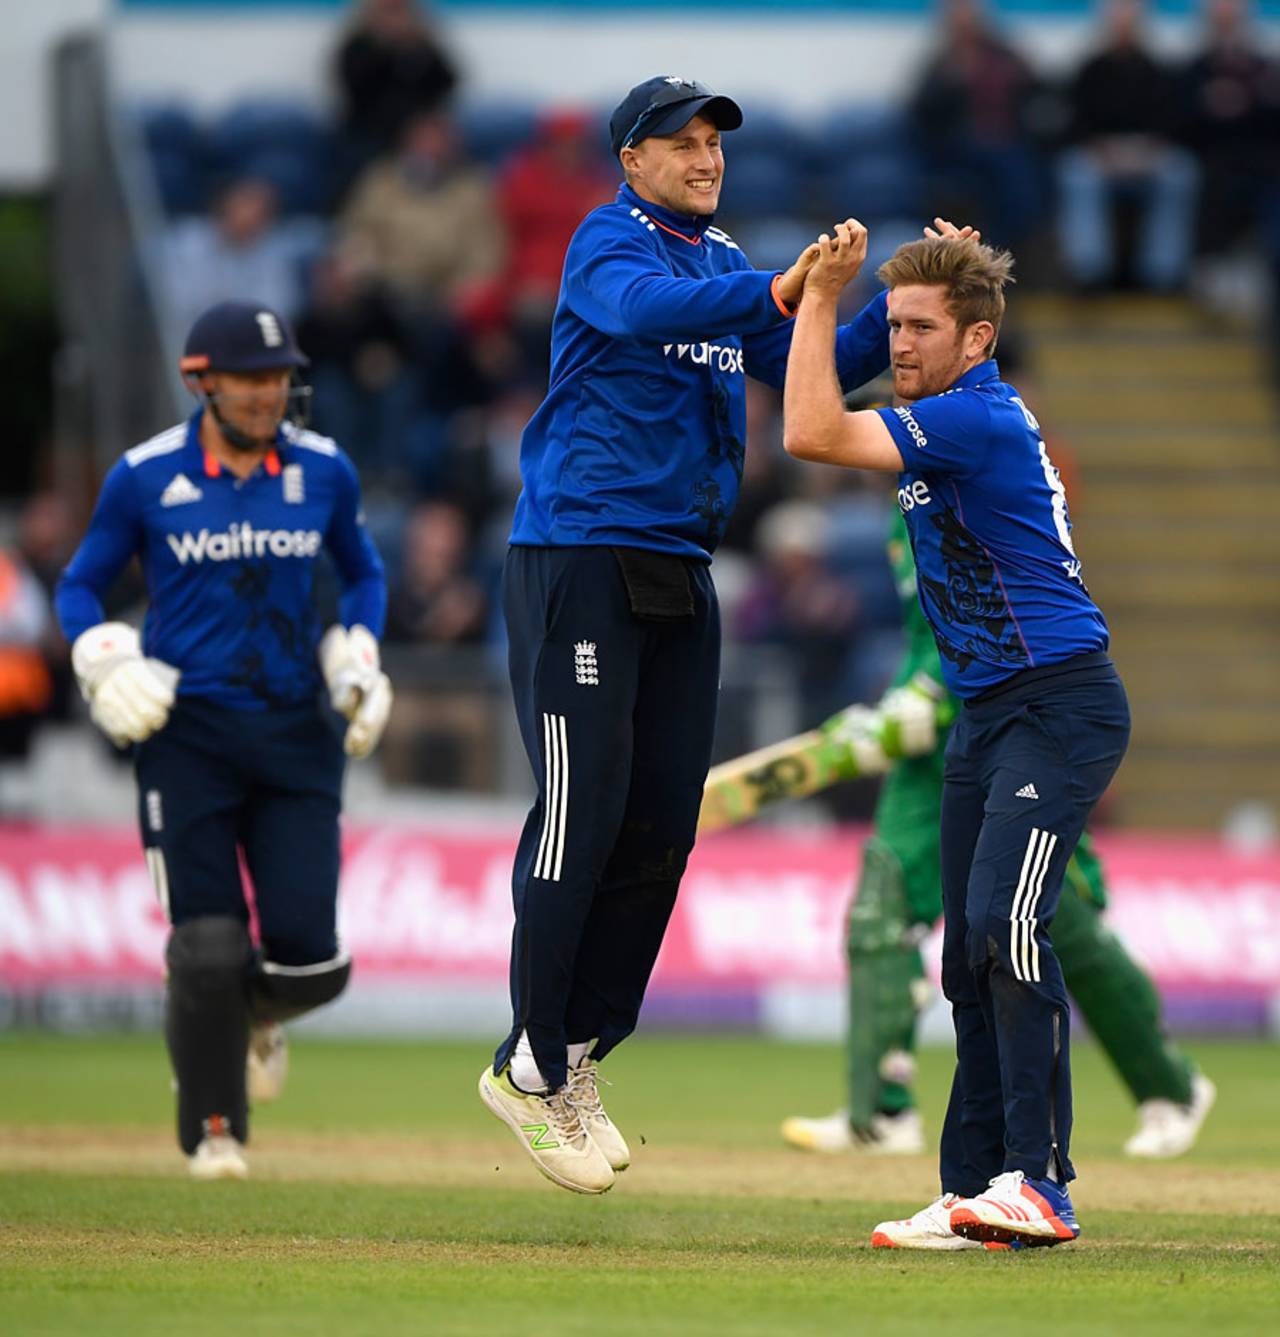 Liam Dawson celebrates a wicket against Pakistan earlier this year&nbsp;&nbsp;&bull;&nbsp;&nbsp;Getty Images